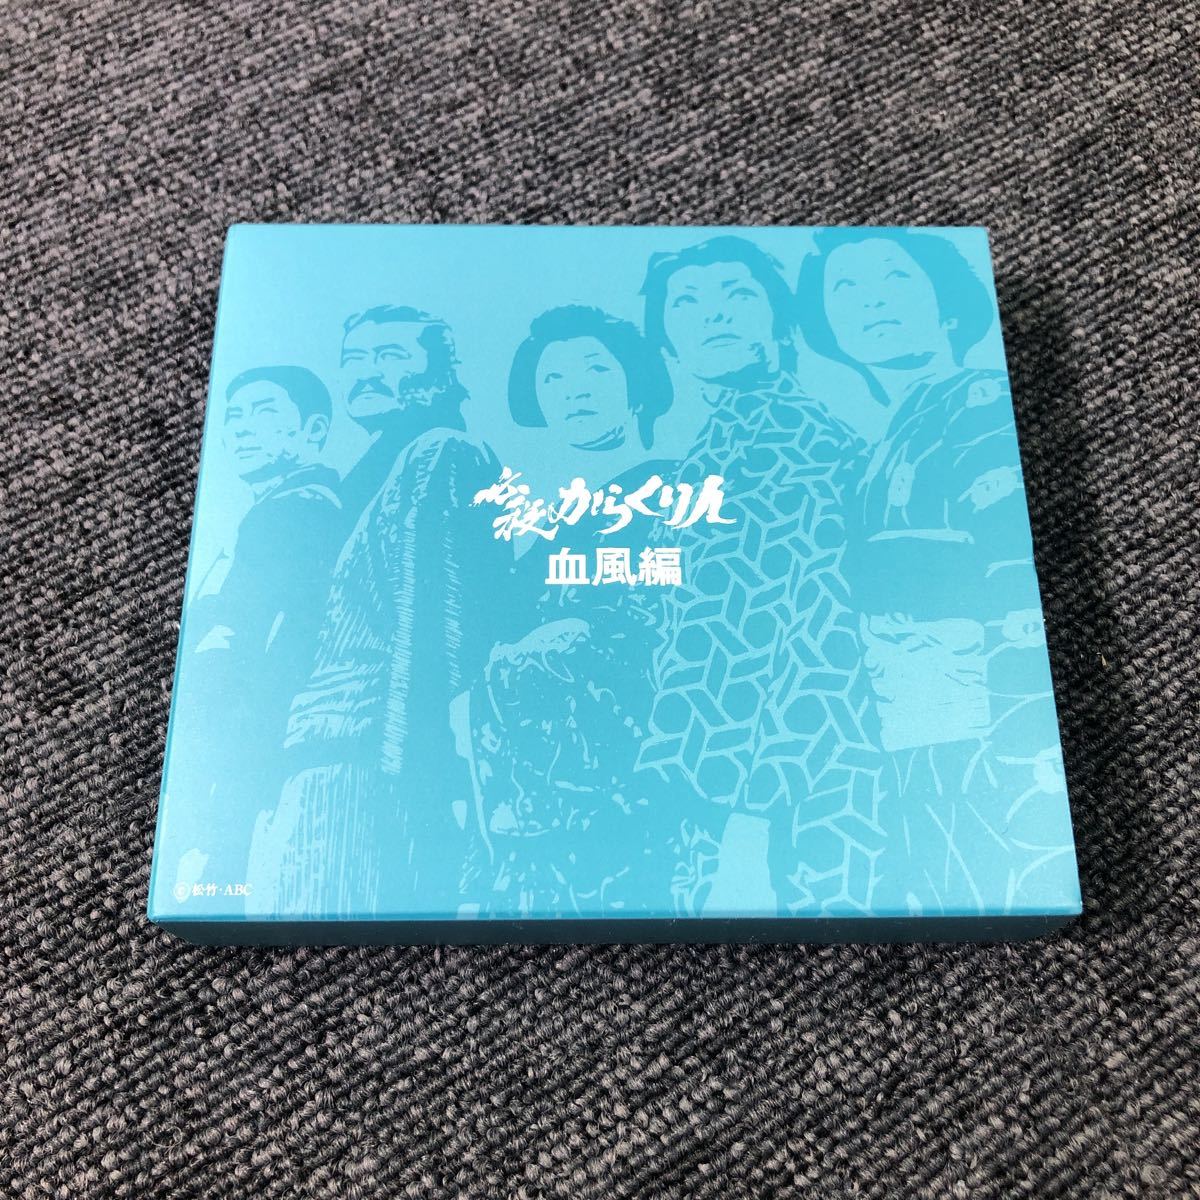 DVD 新必殺からくり人 DVD-BOX www.grupo-syz.com